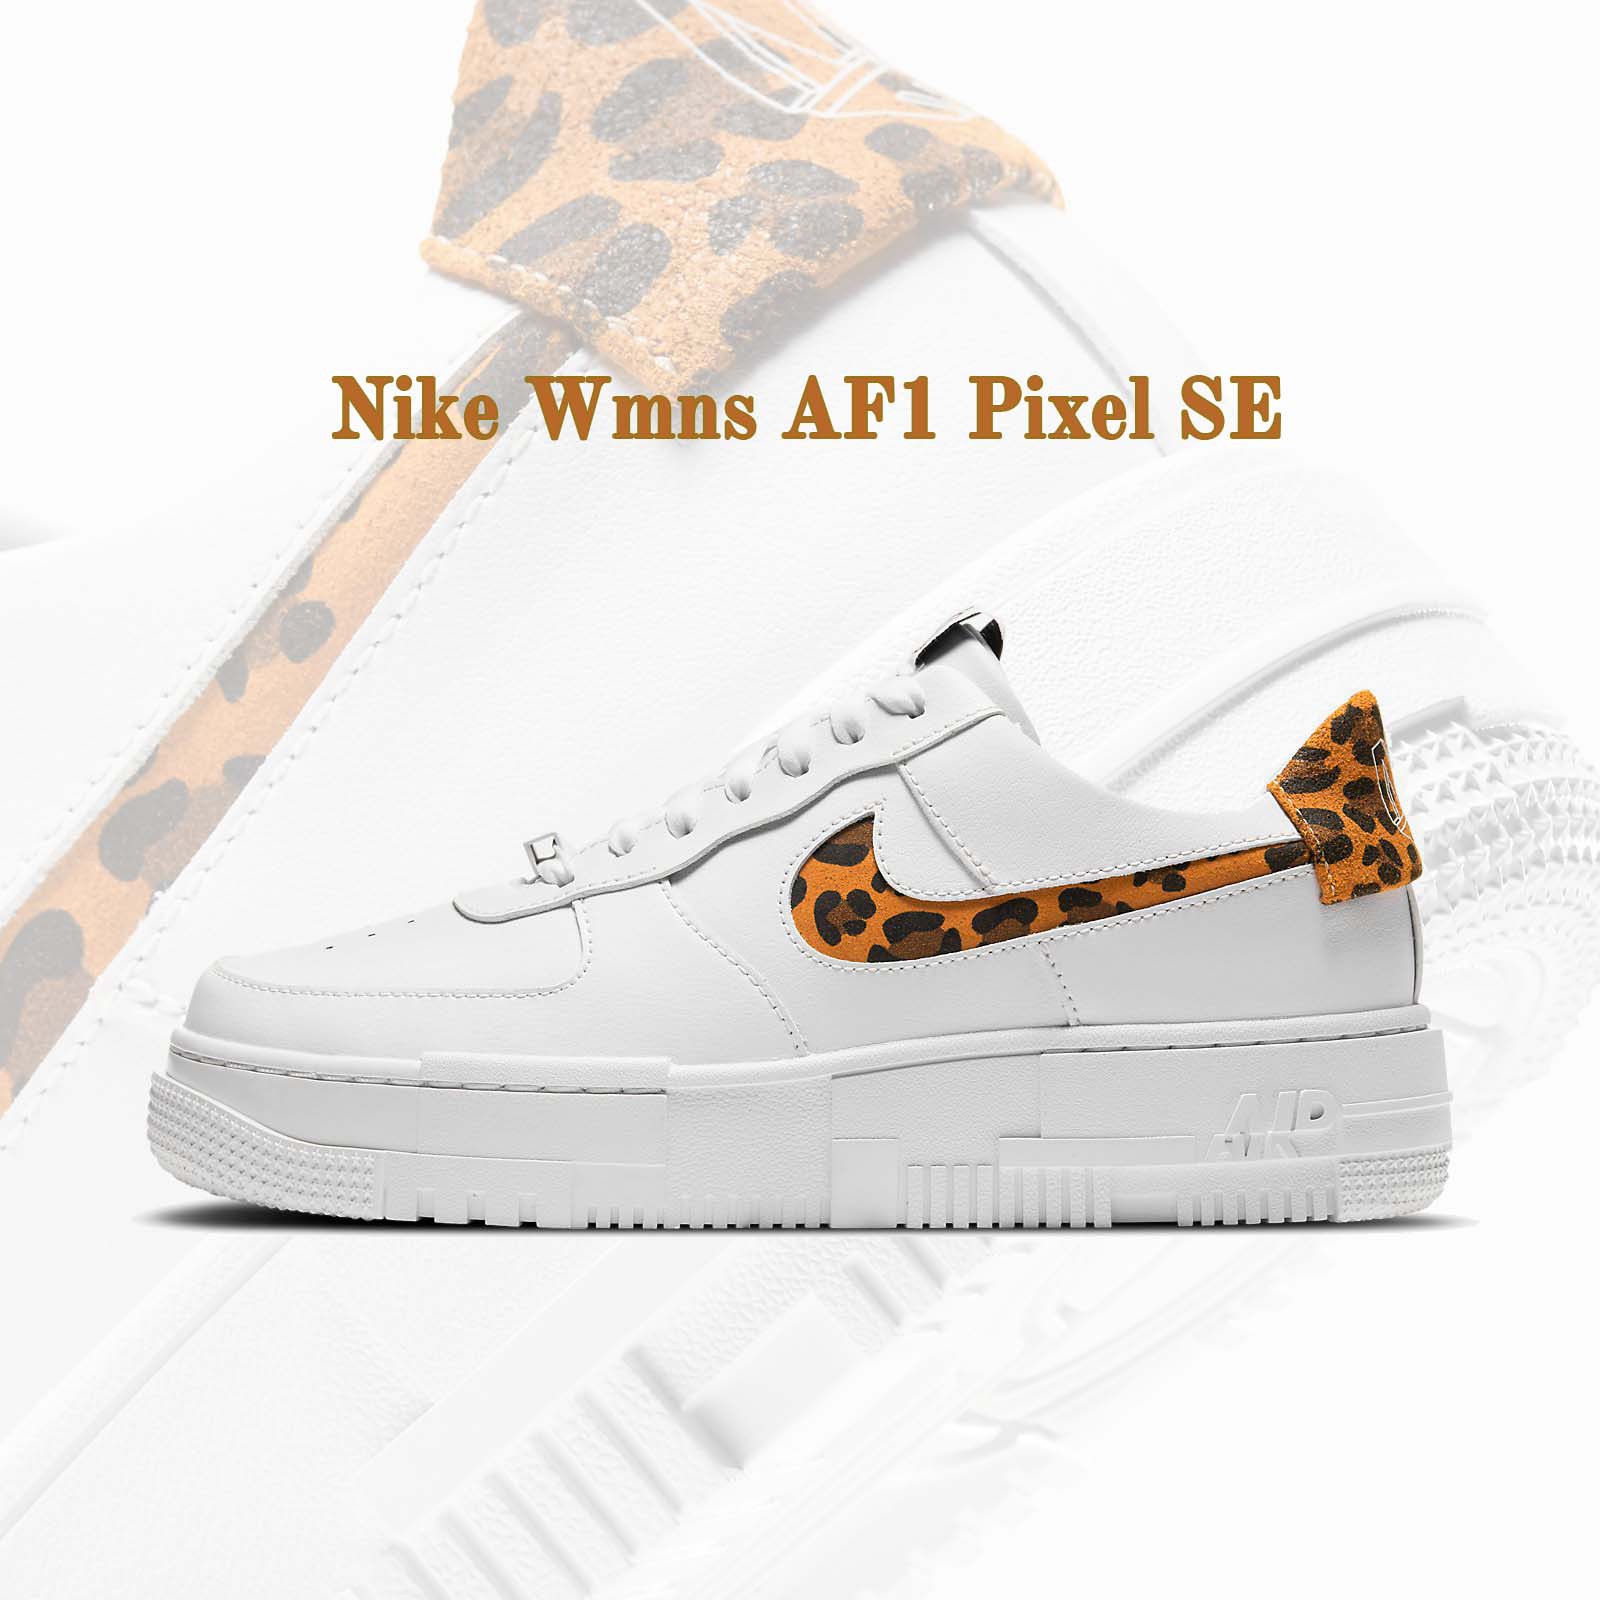 Nike 休閒鞋 Wmns AF1 Pixel SE Air Force 1 豹紋 小白鞋 女鞋 CV8481-100